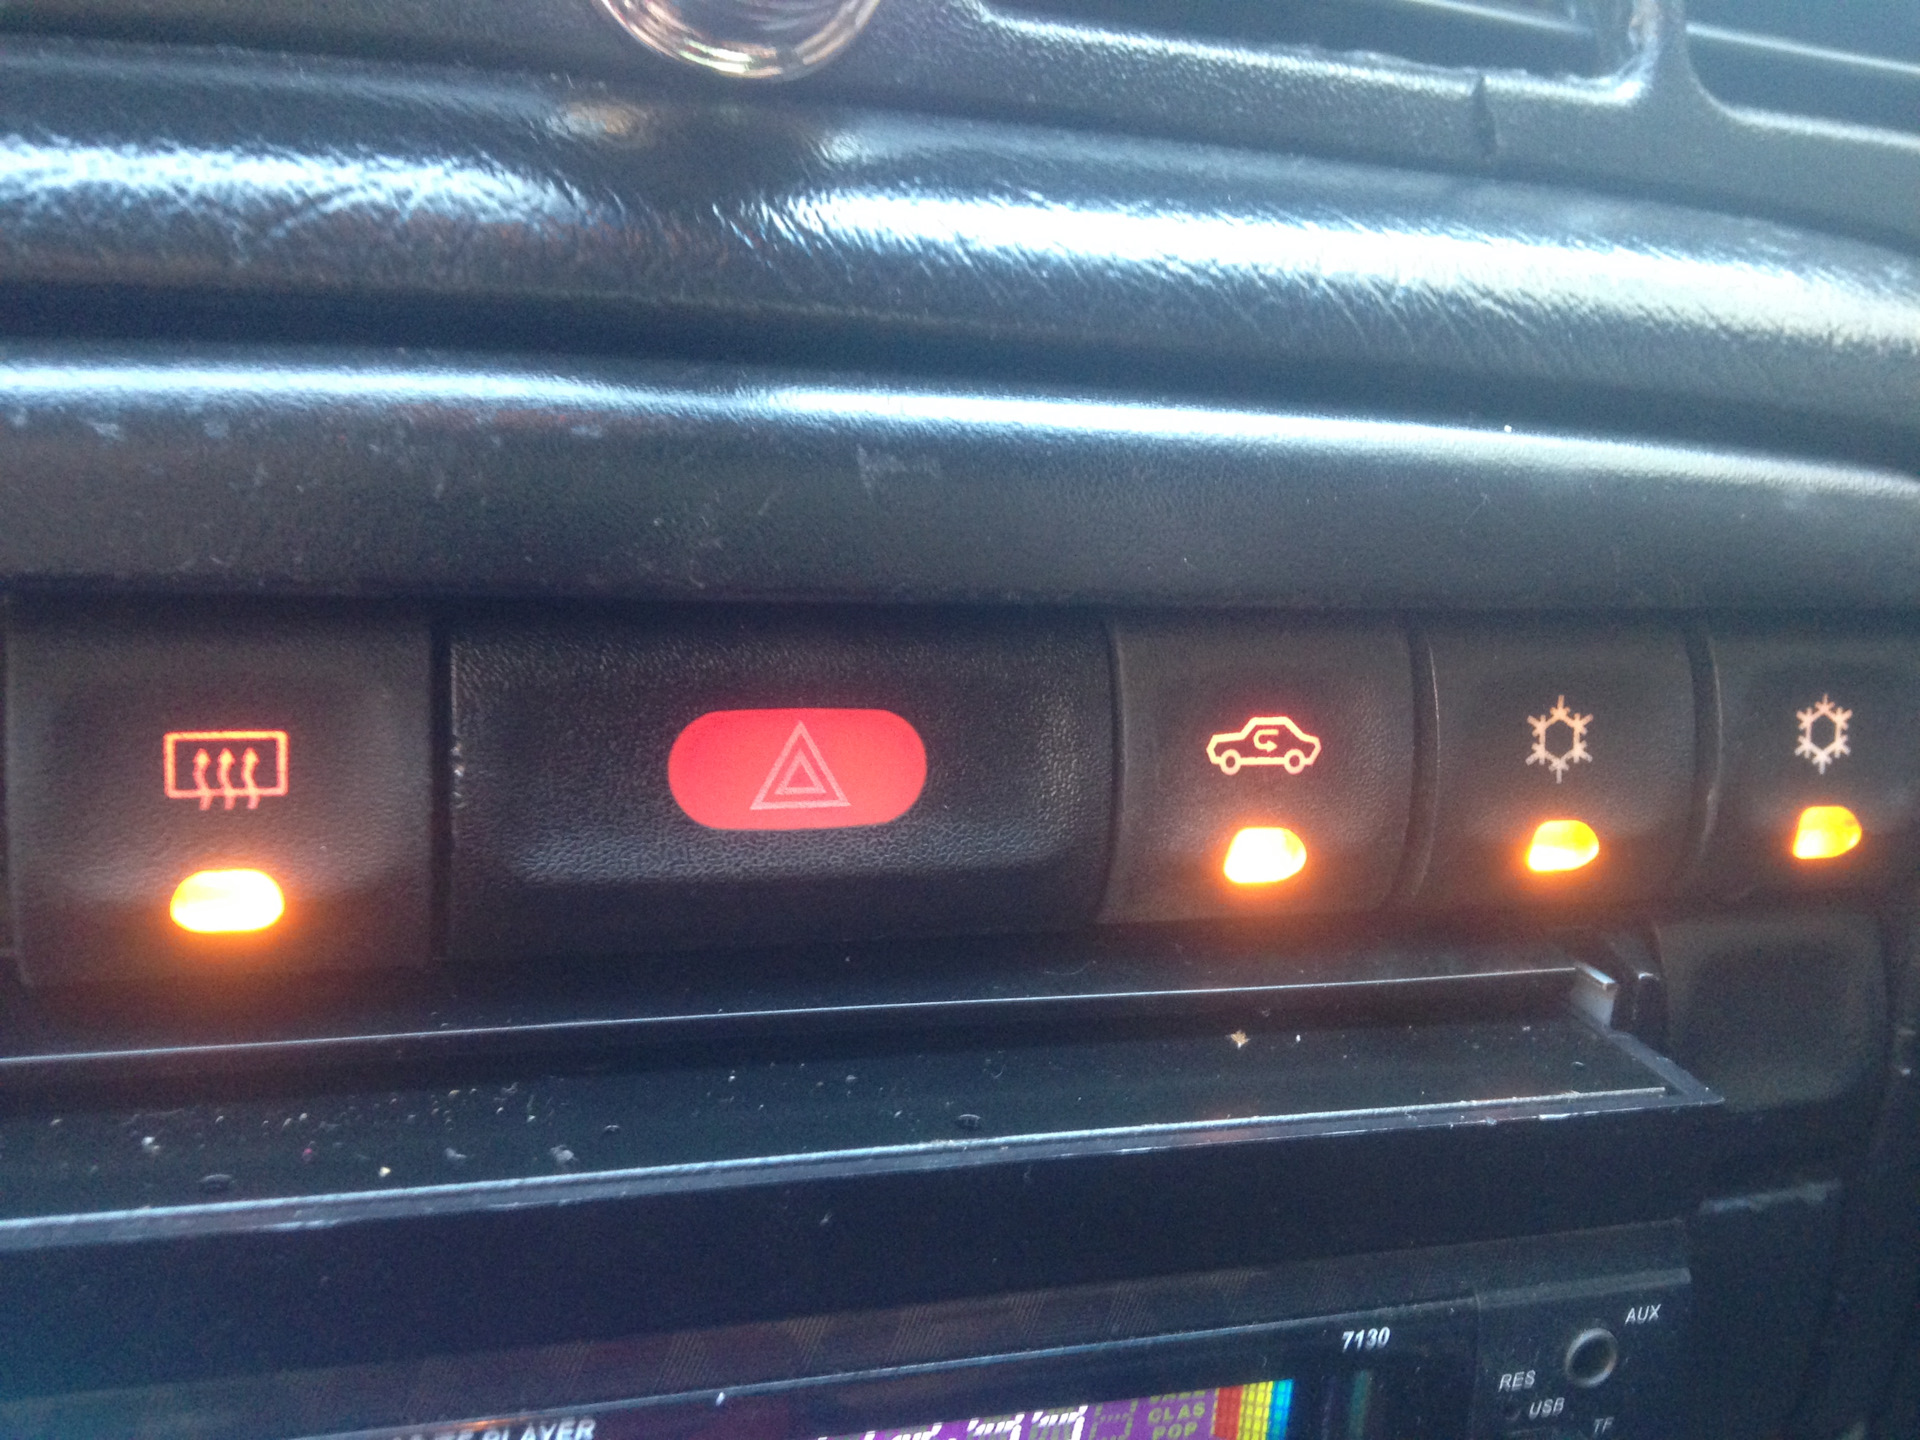 Кнопки вектра б. Кнопка Opel Vectra b. Подсветка кнопок Опель Вектра а. Лампа подсветки кнопок Опель Вектра б.